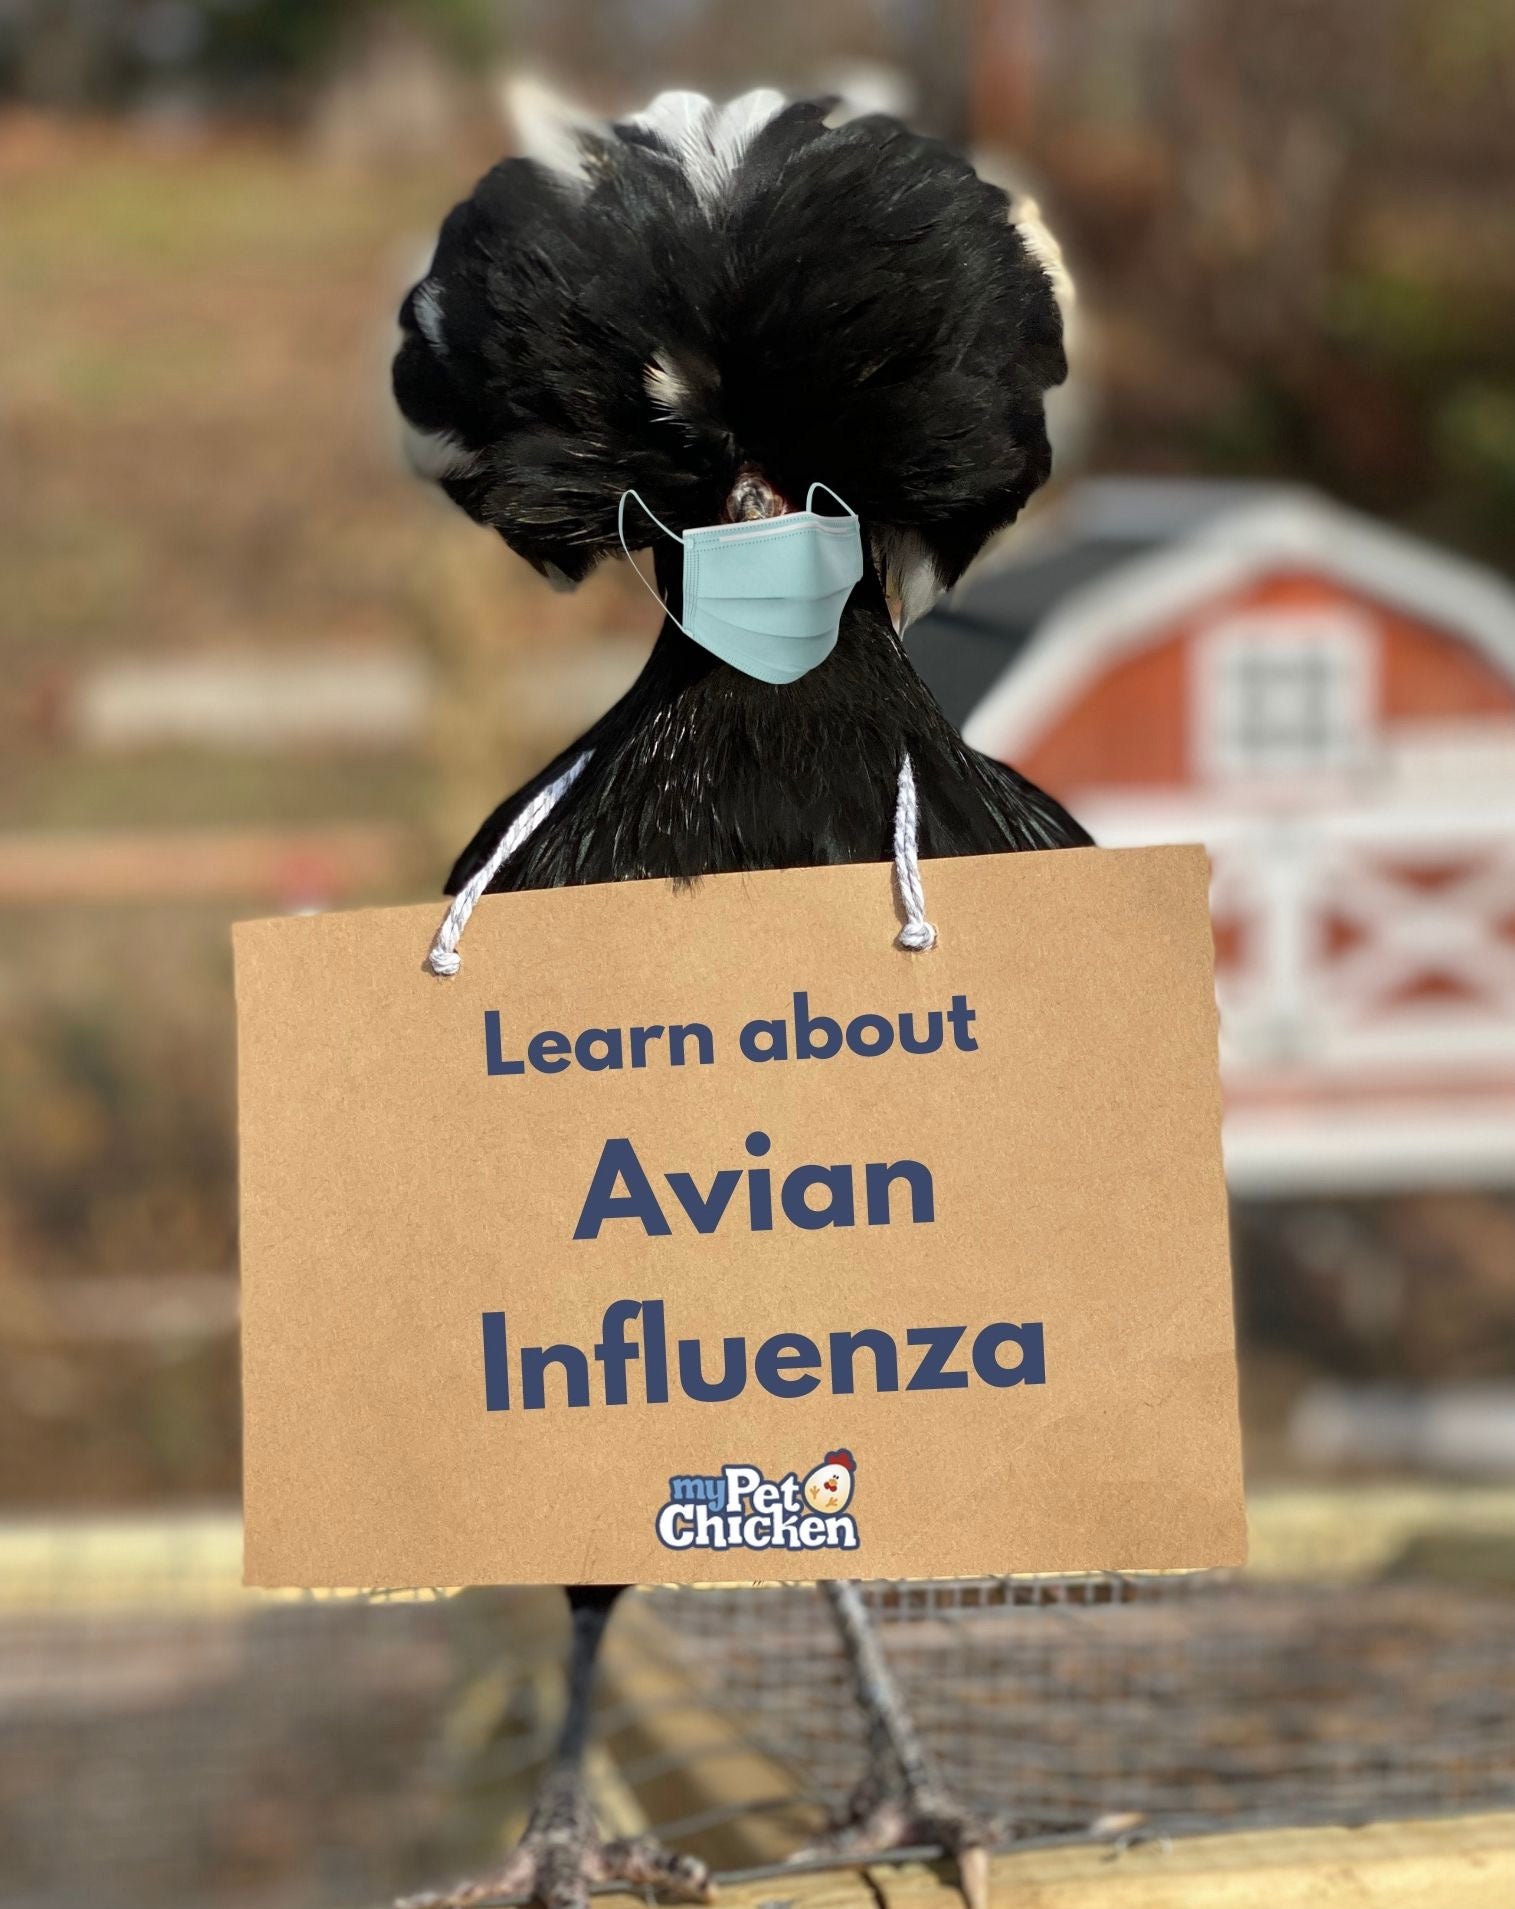 Avian Influenza is here: 5 takeaways